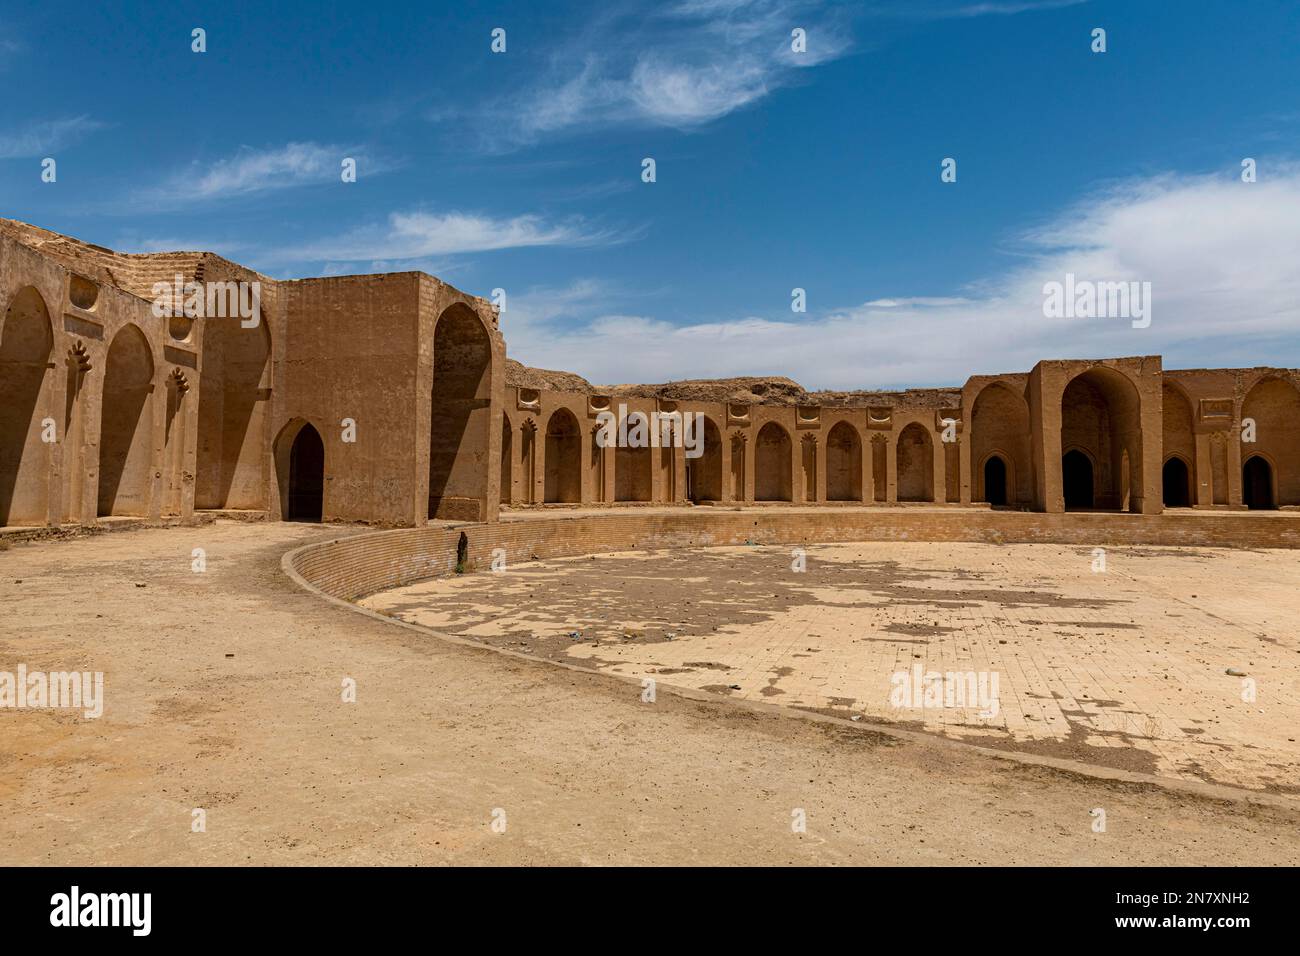 Calipha palace, Unesco site, Samarra, Iraq Stock Photo